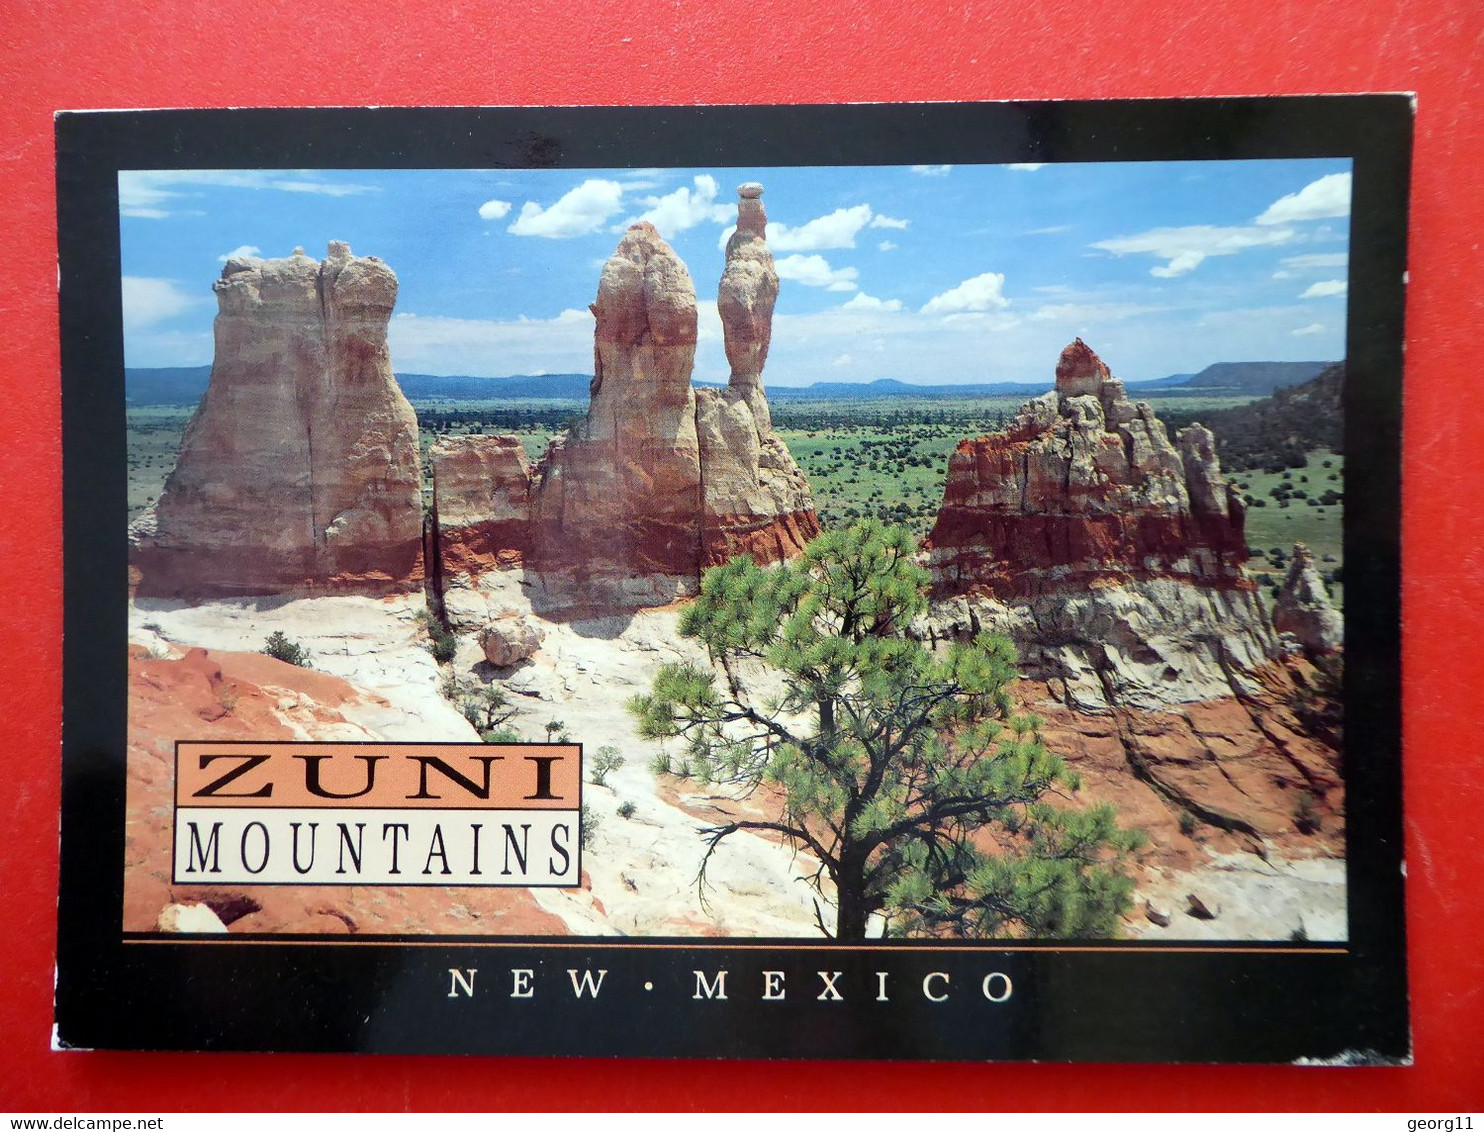 Zuñi Mountains - New Mexico - Cibola National Fores - USA - Albuquerque